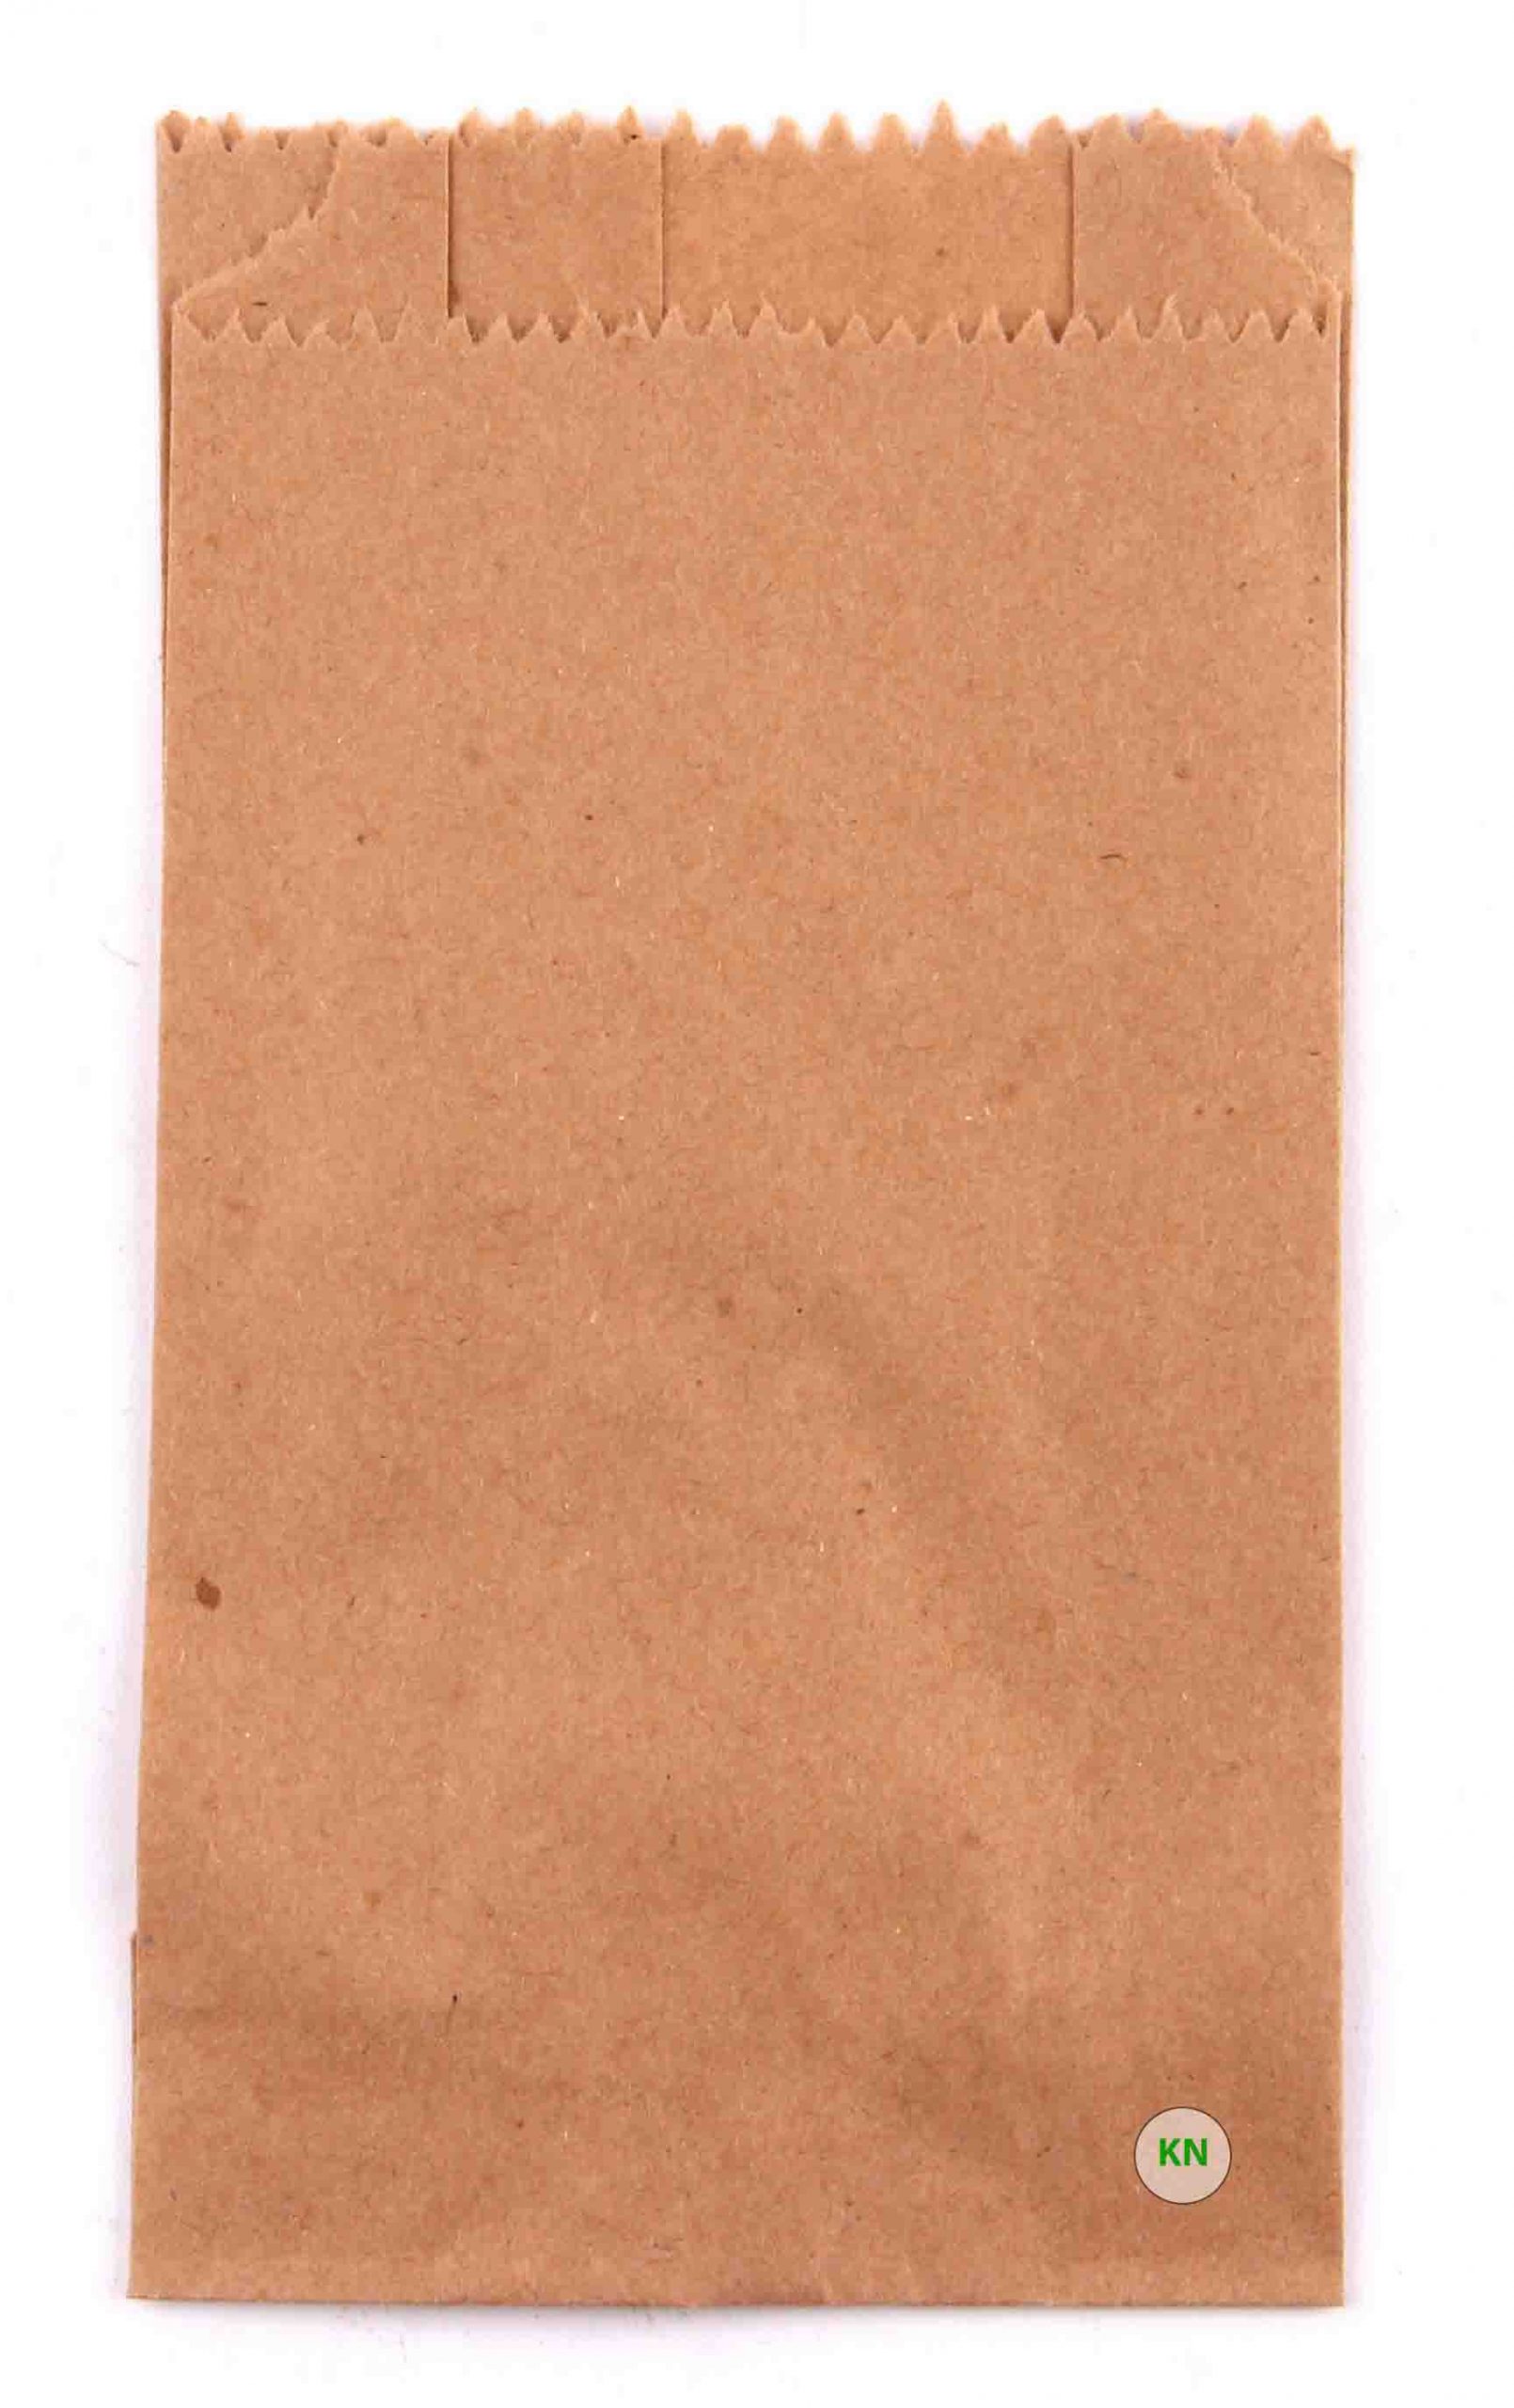 Пакет бумажный коричневый для картошки фри, 170 х 100 х 30 мм